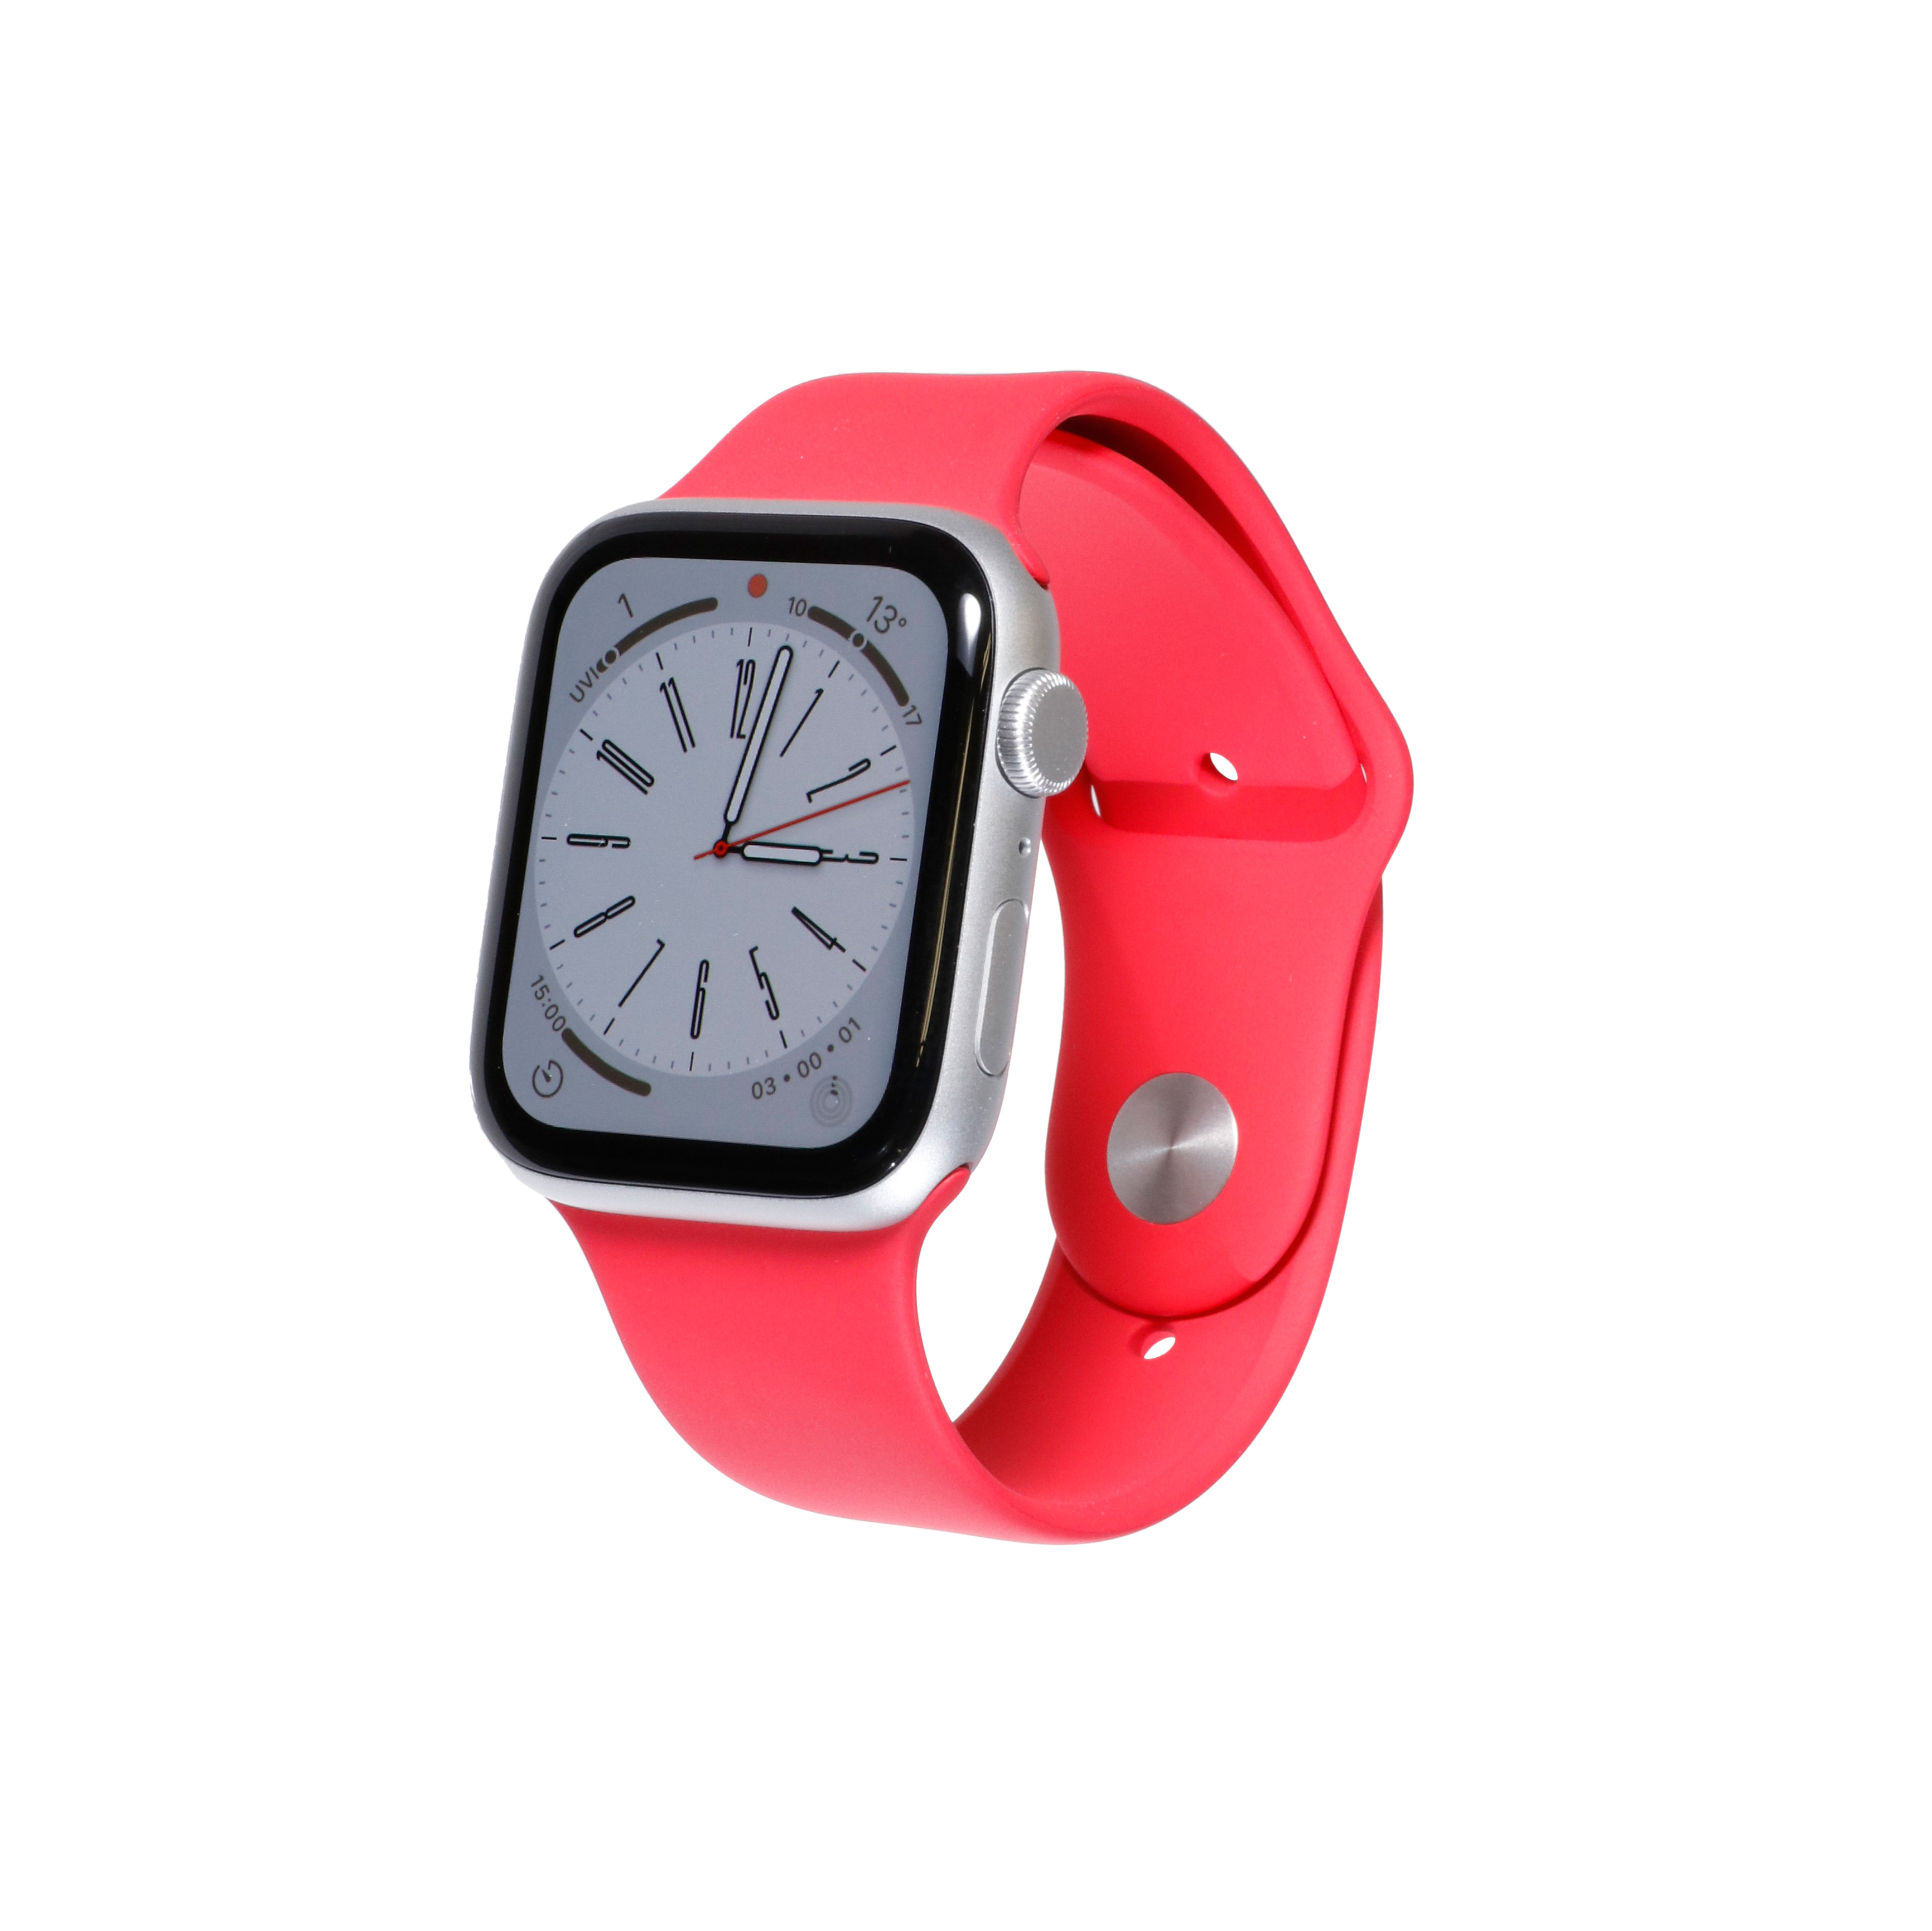 Apple Watch縺ｮ縺翫☆縺吶ａ莠ｺ豌励Λ繝ｳ繧ｭ繝ｳ繧ｰ9驕ｸ縲�2023蟷ｴ11譛亥ｾｹ蠎墓ｯ碑ｼ�縲� mybest